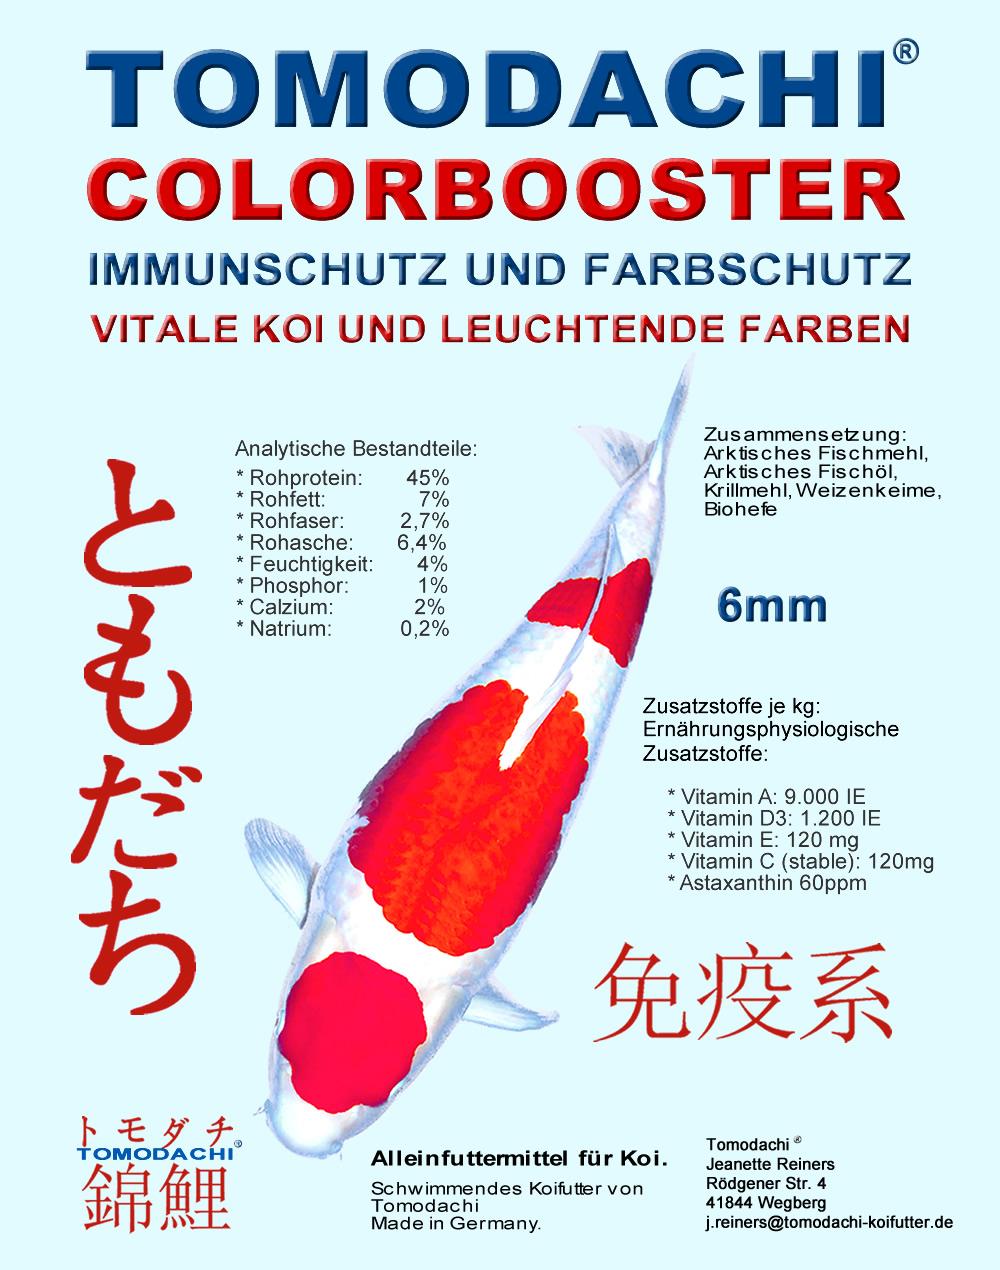 Tomodachi Colorbooster ist ein Wachstumstfutter mit der farbverstärkenden Wirkung von Astaxanthin, das den Erhalt der körpereigenen Immunabwehr der Koi unterstützt, für vitale und besonders schöne Koi.